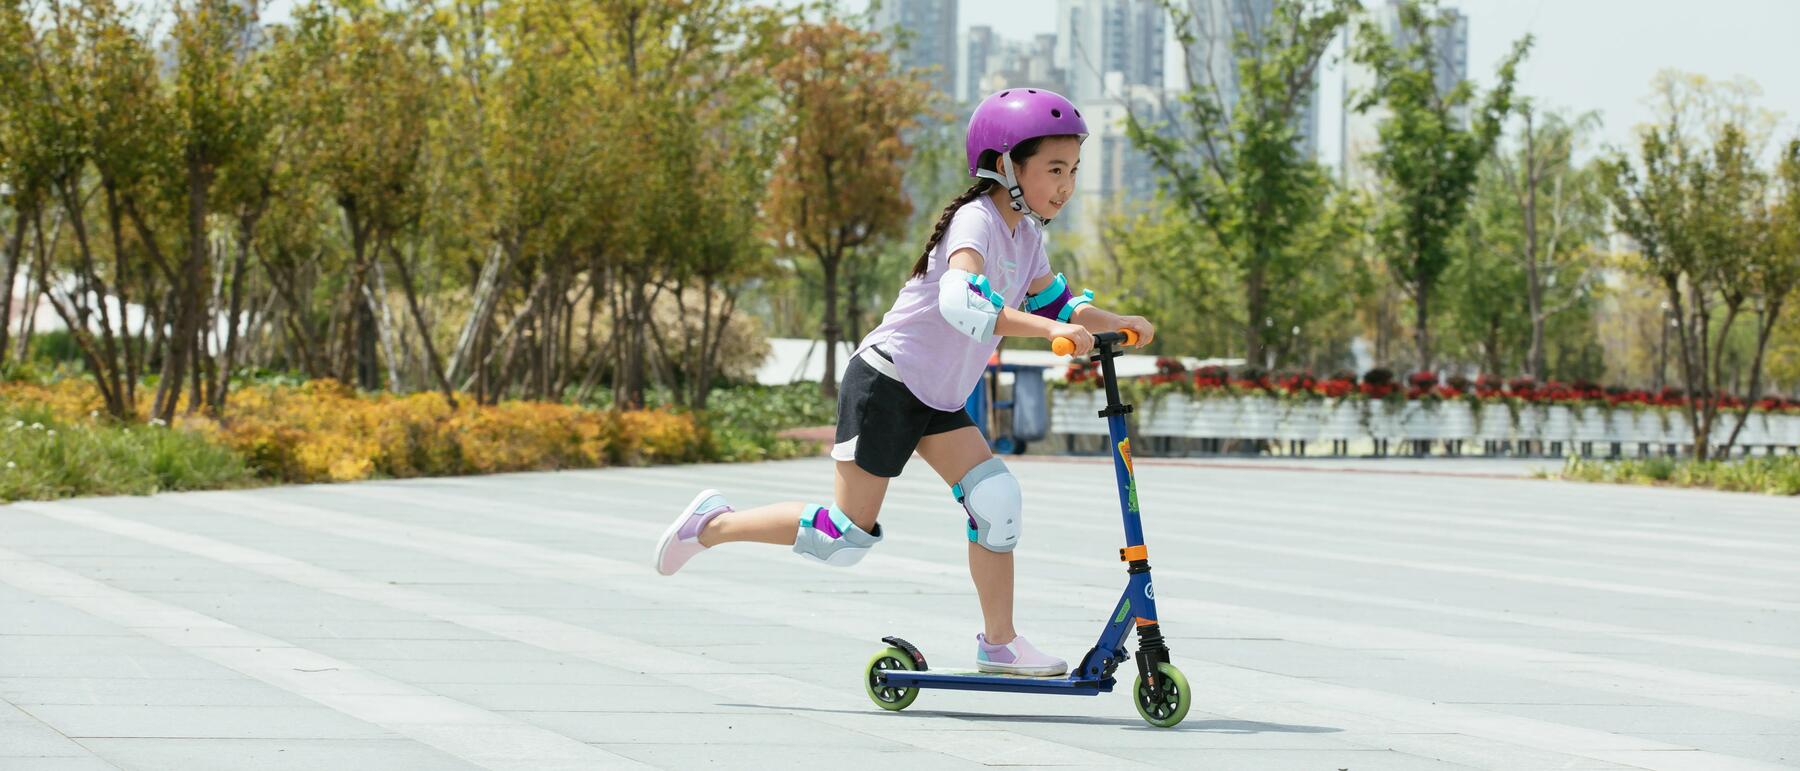 Kind fährt auf einem Roller mit Schutzausrüstung